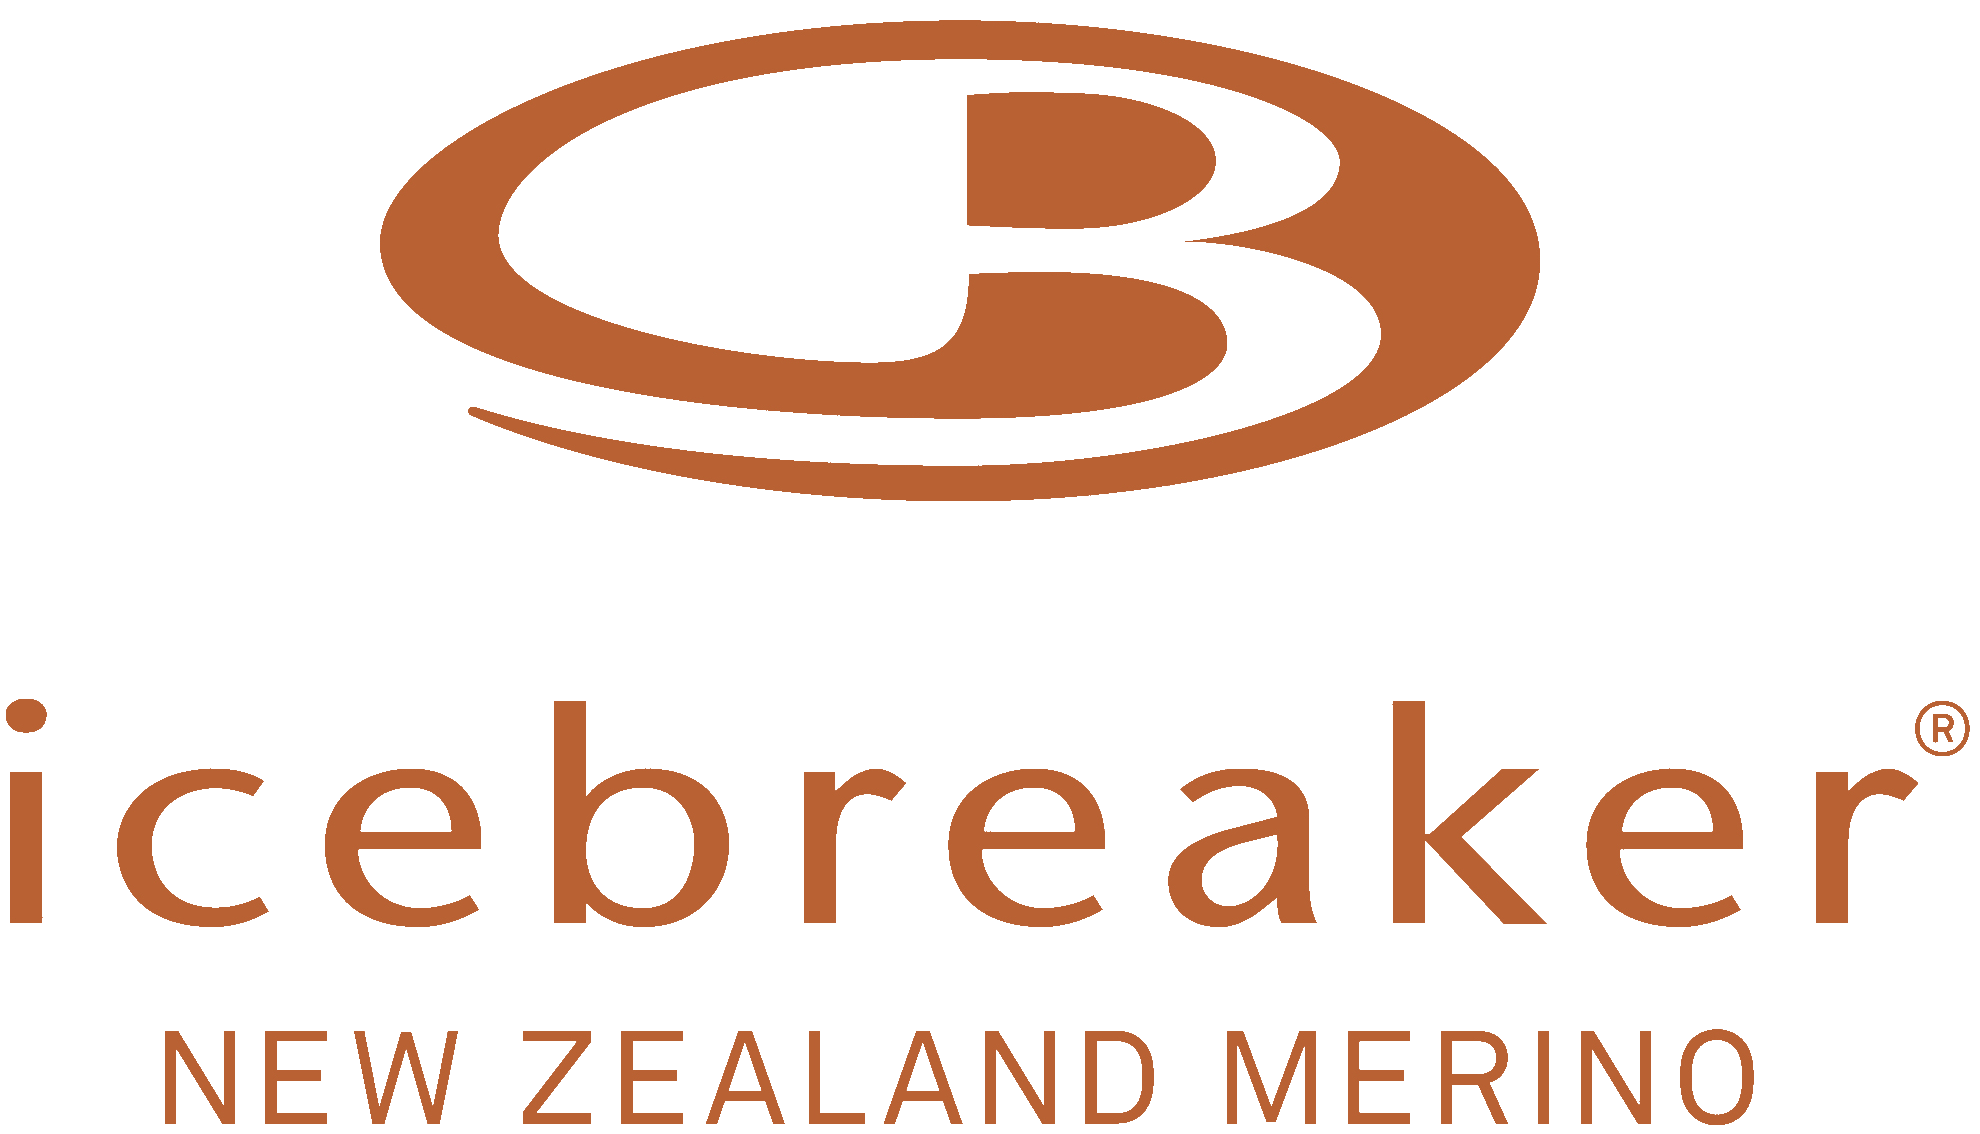 Icebreaker Logo - Icebreaker | Berg's Favorite Clothing Brands | Logos, Lululemon logo ...